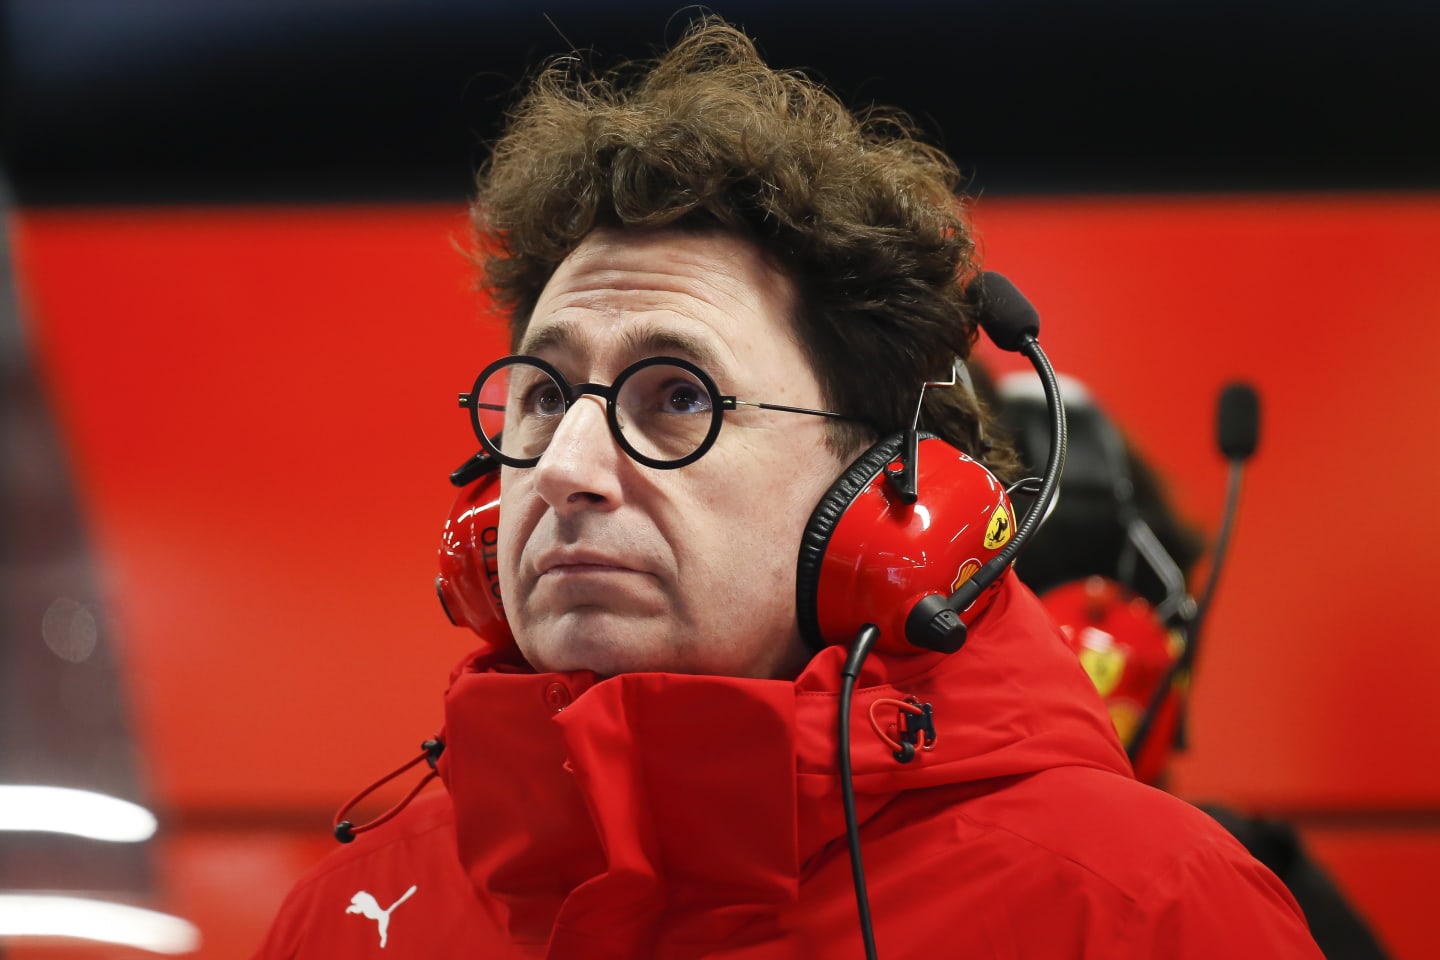 BARCELONA, SPAIN - FEBRUARY 20: Mattia Binotto of Scuderia Ferrari follows the session during day